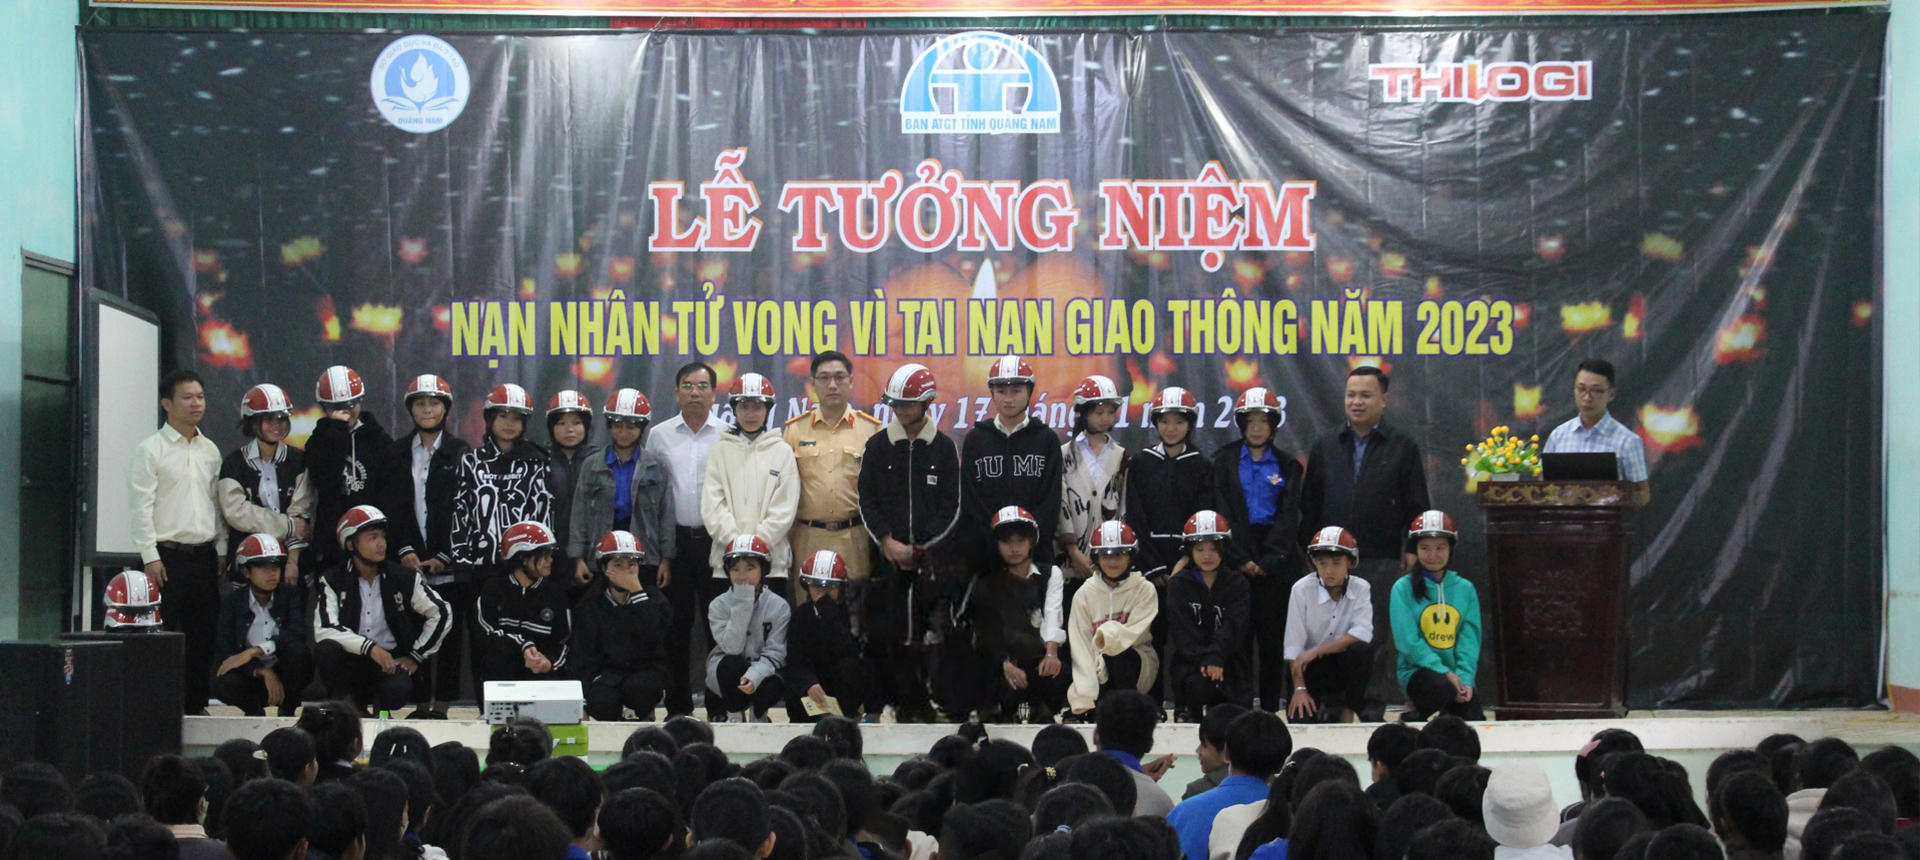 THILOGI tài trợ mũ bảo hiểm cho học sinh vùng cao huyện Phước Sơn